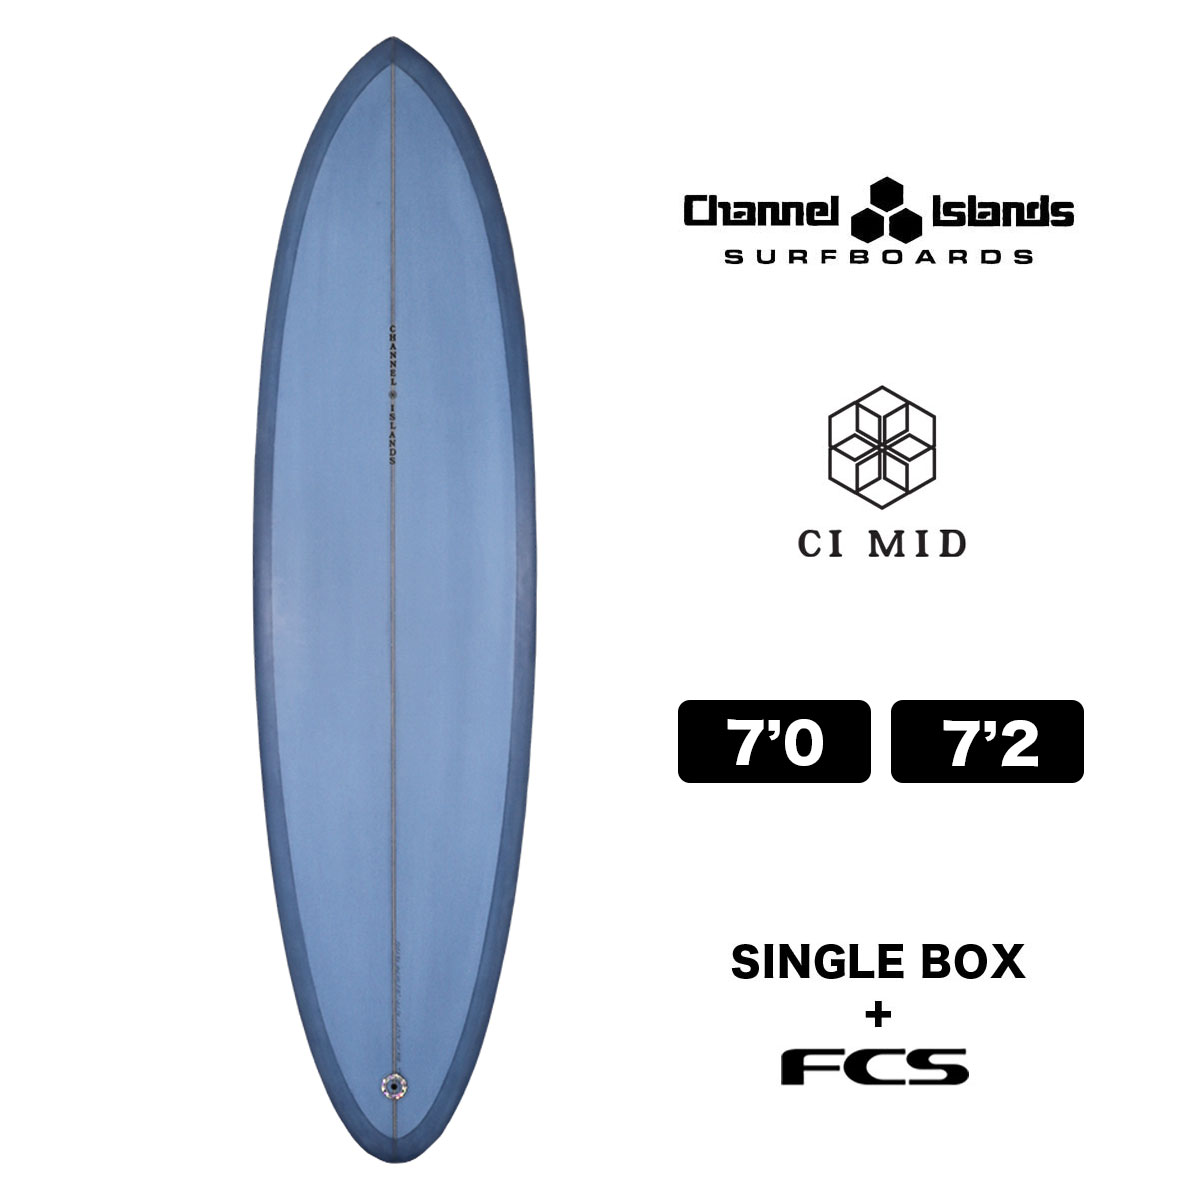 チャンネルアイランズ サーフボード ミッドレングス ファンボード シーアイミッド 7.0 7.2 ブルー 2＋1 チャンネルアイランド Channel  Islands CI MID 7'0 7'2